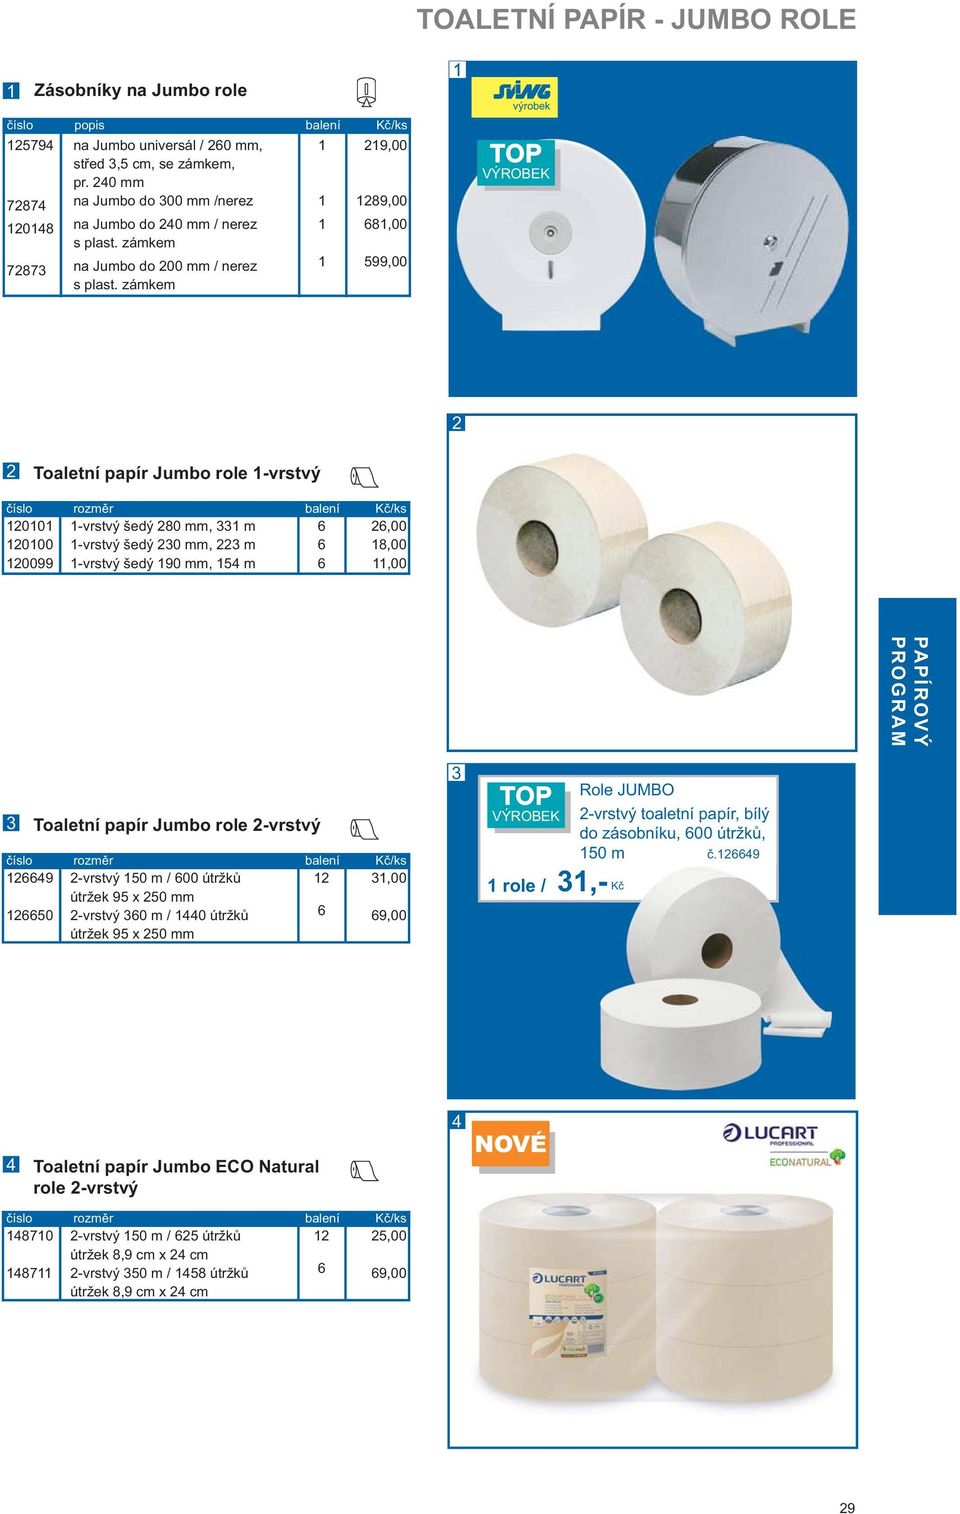 zámkem 9,00 89,00 8,00 599,00 výrobek TOP VÝROBEK Toaletní papír Jumbo role -vrstvý 00 000 0099 -vrstvý šedý 80 mm, m -vrstvý šedý 0 mm, m -vrstvý šedý 90 mm, 5 m,00 8,00,00 Toaletní papír Jumbo